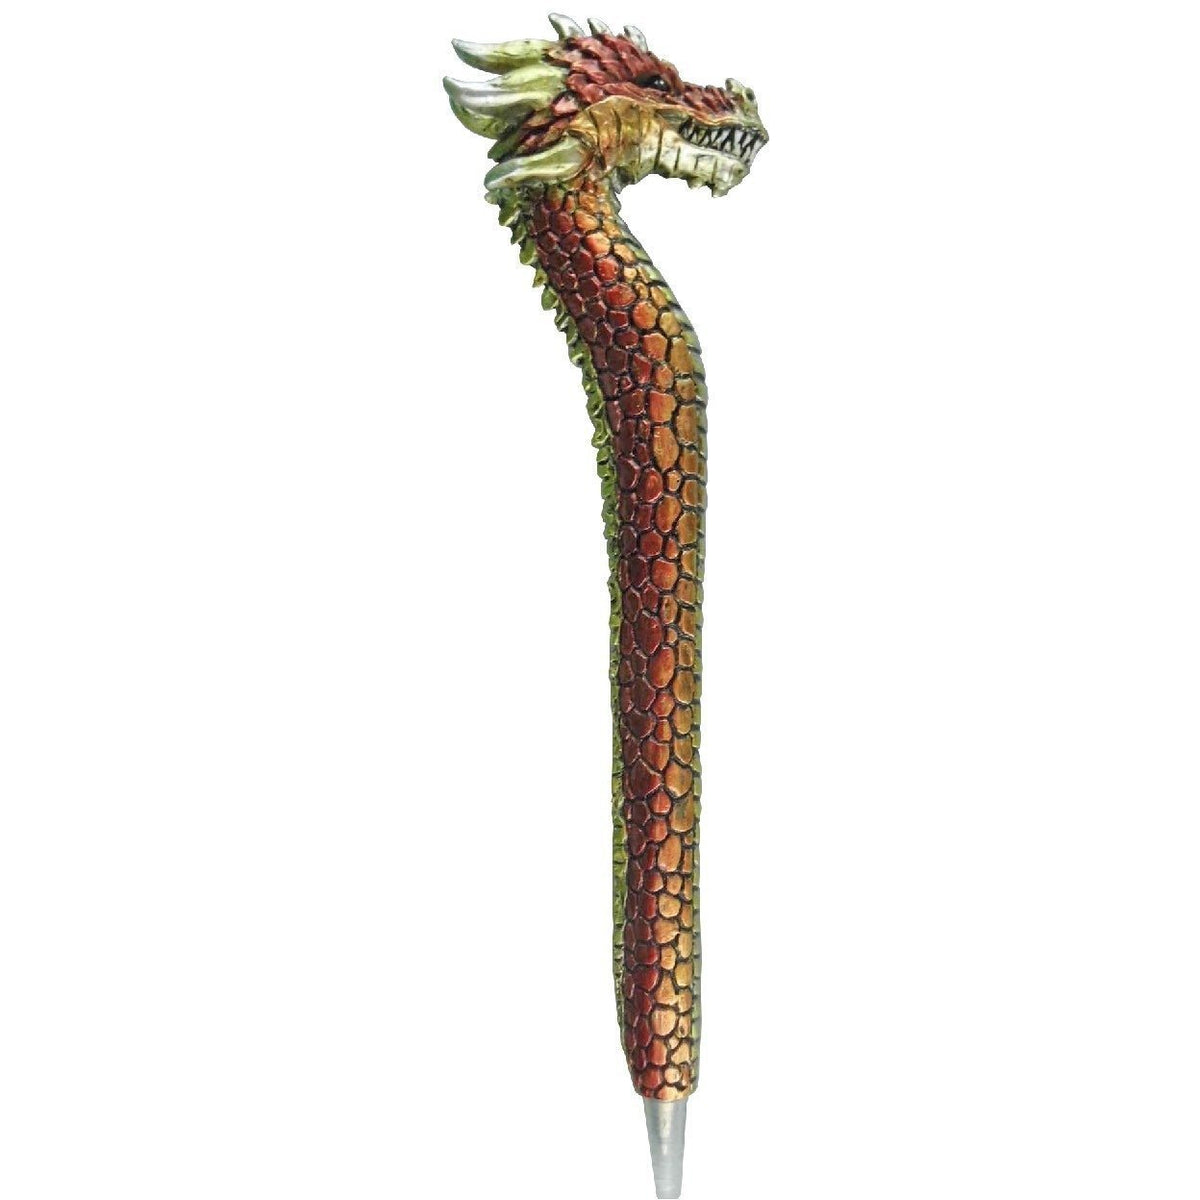 Dragon Pen